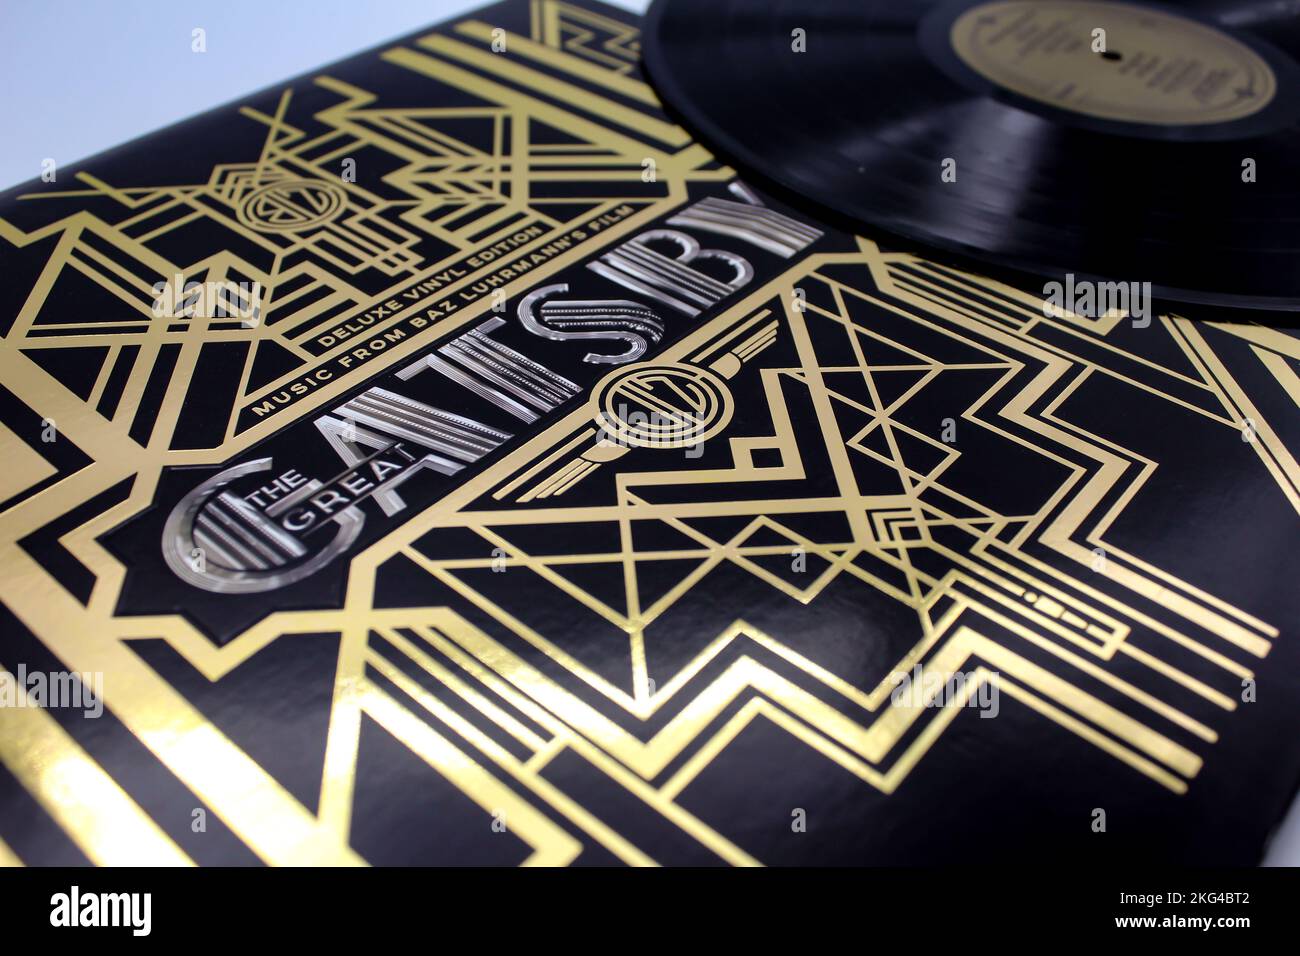 La colonna sonora di Great Gatsby su disco LP in vinile della colonna sonora del film. Musica jazz. Il film è basato sul romanzo di F. Scott Fitzgerald. Foto Stock